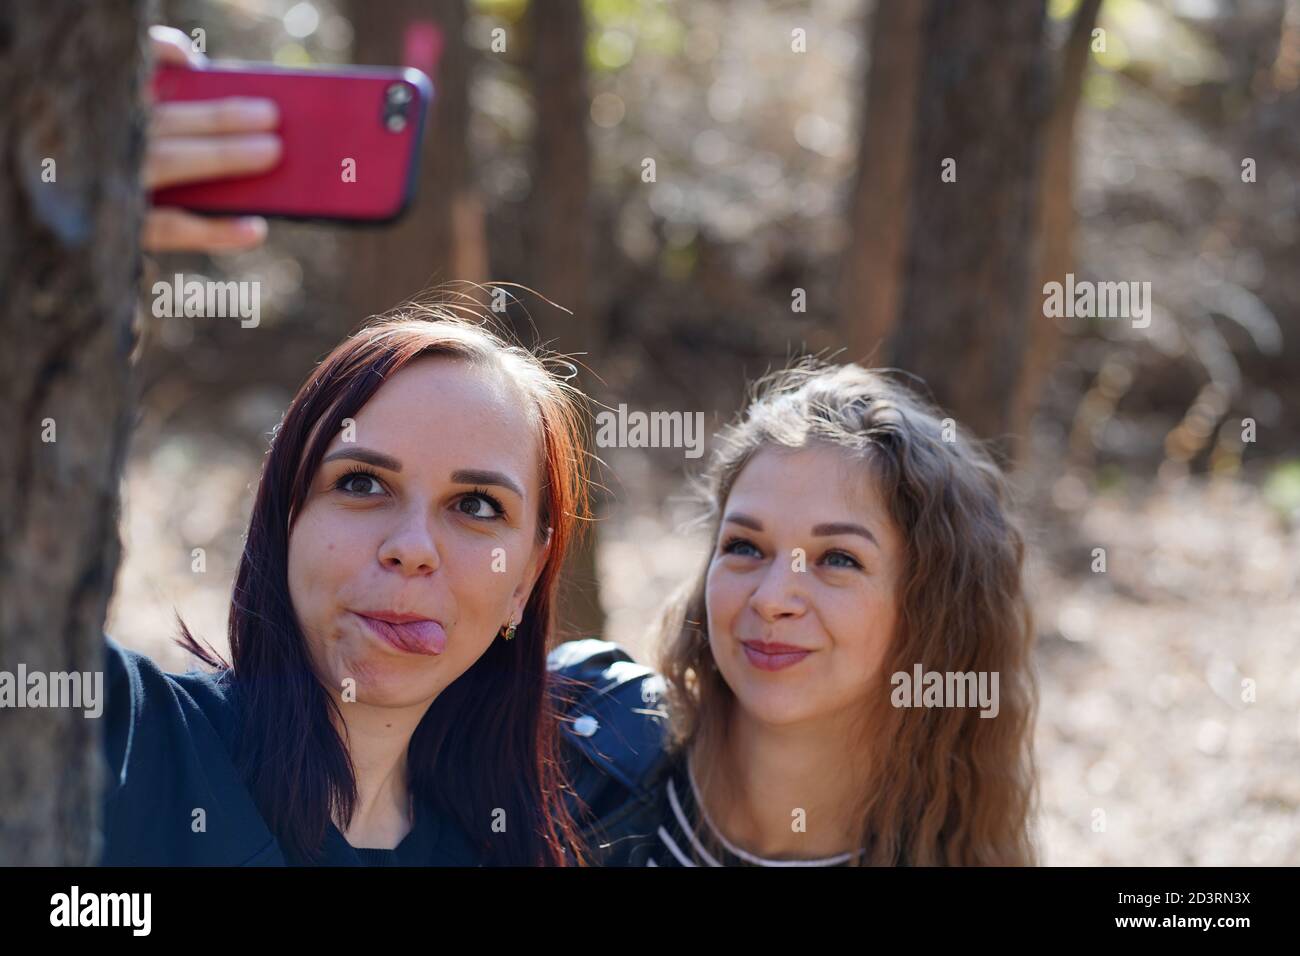 Nahaufnahme von jungen Frauen, die Selfie auf dem Smartphone in Holz. Hübsche Frauen, die auf dem Handy fotografieren. Stockfoto